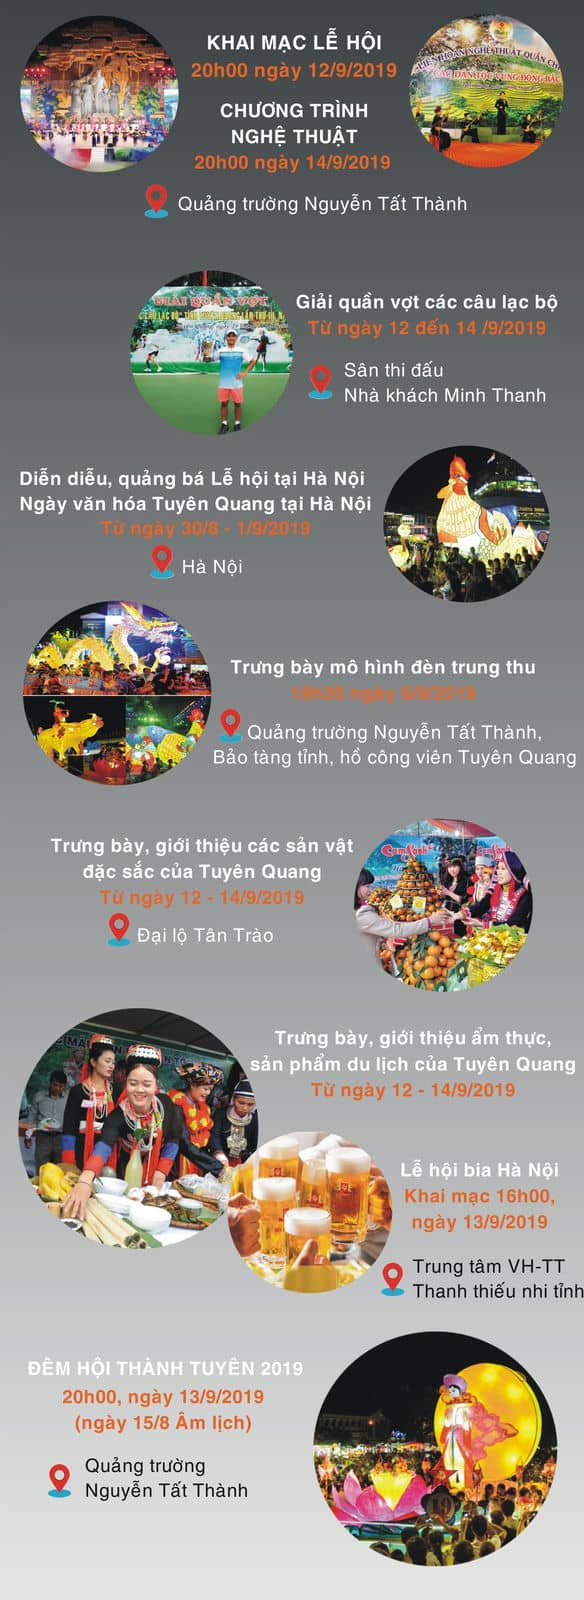 Timeline chuỗi hoạt động trong 3 ngày tổ chức lễ hội thành Tuyên 2019